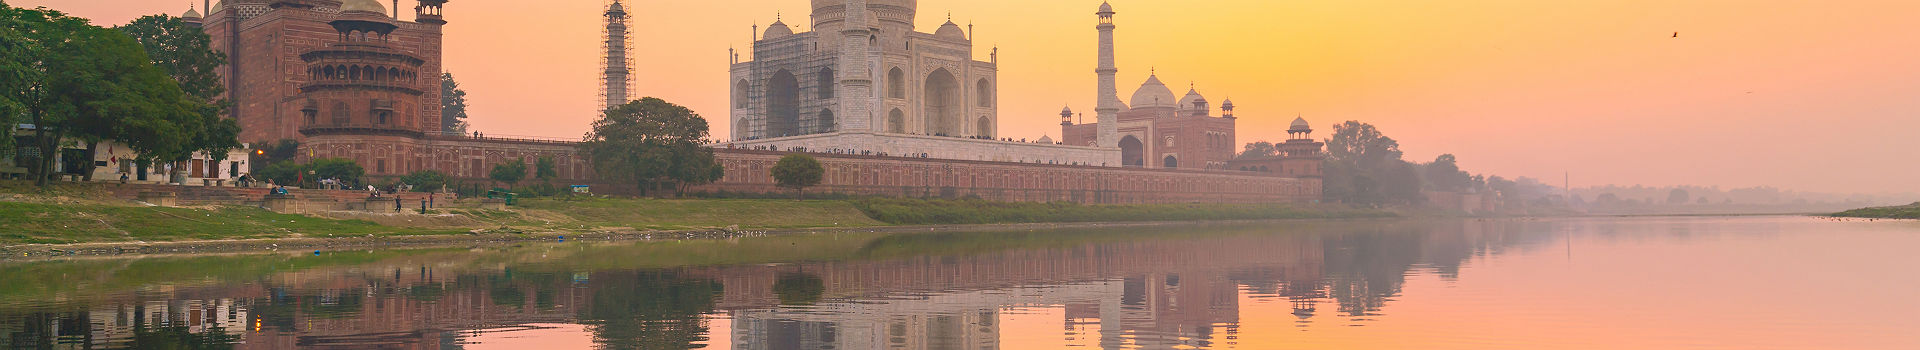 Inde - Vue sur le mausolée de Taj Mahal depuis un bateau, à Agra